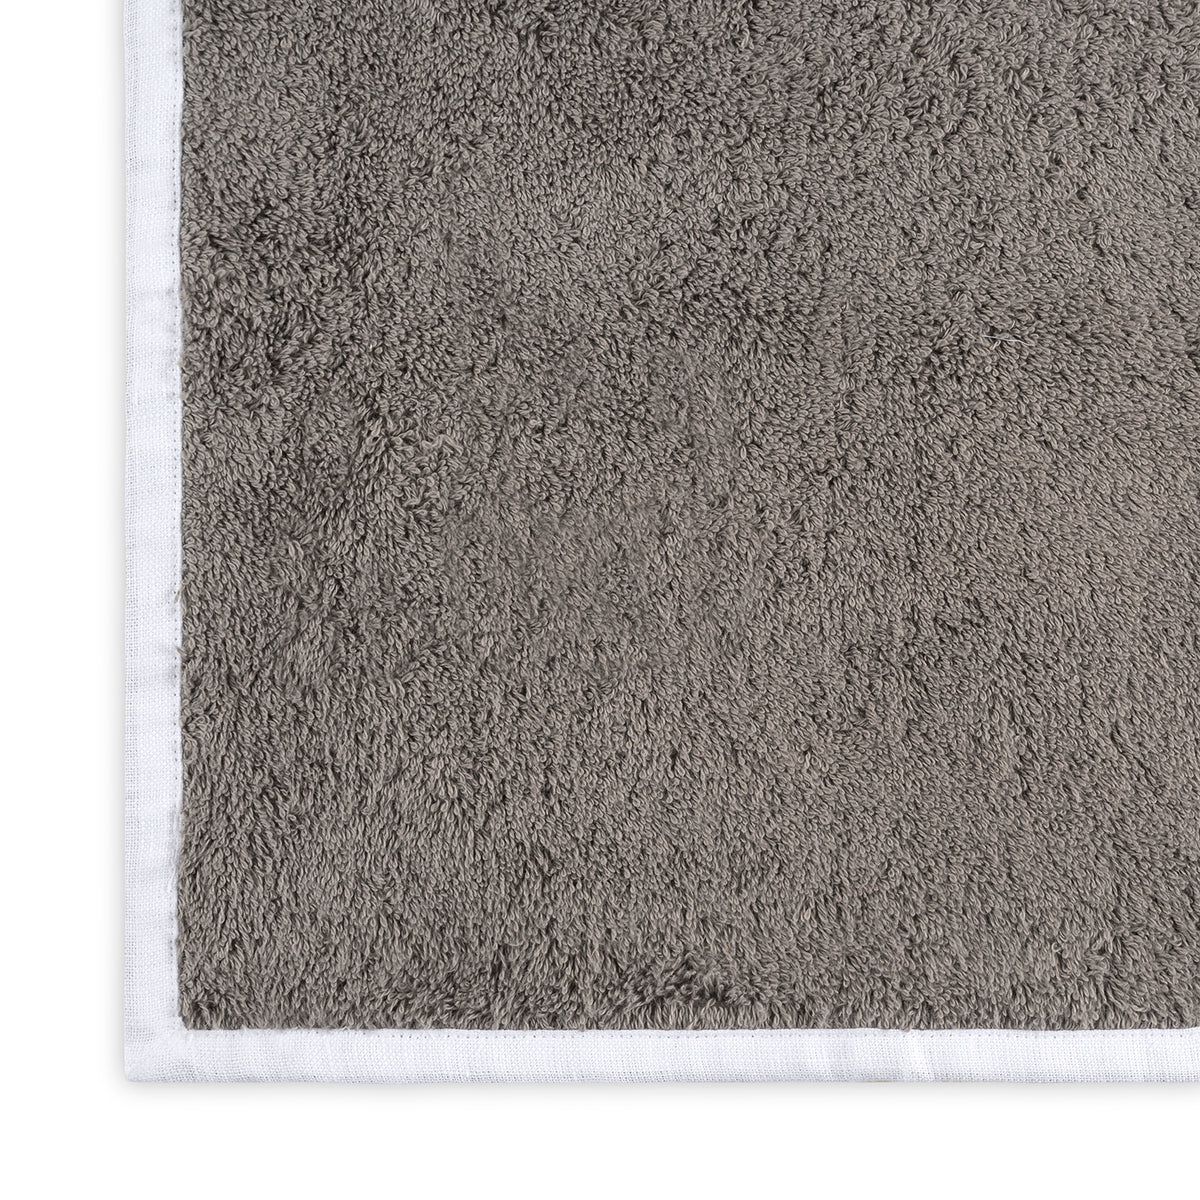 Matouk Enzo Bath Towels Swatch Smoke Gray/White Fine Linens